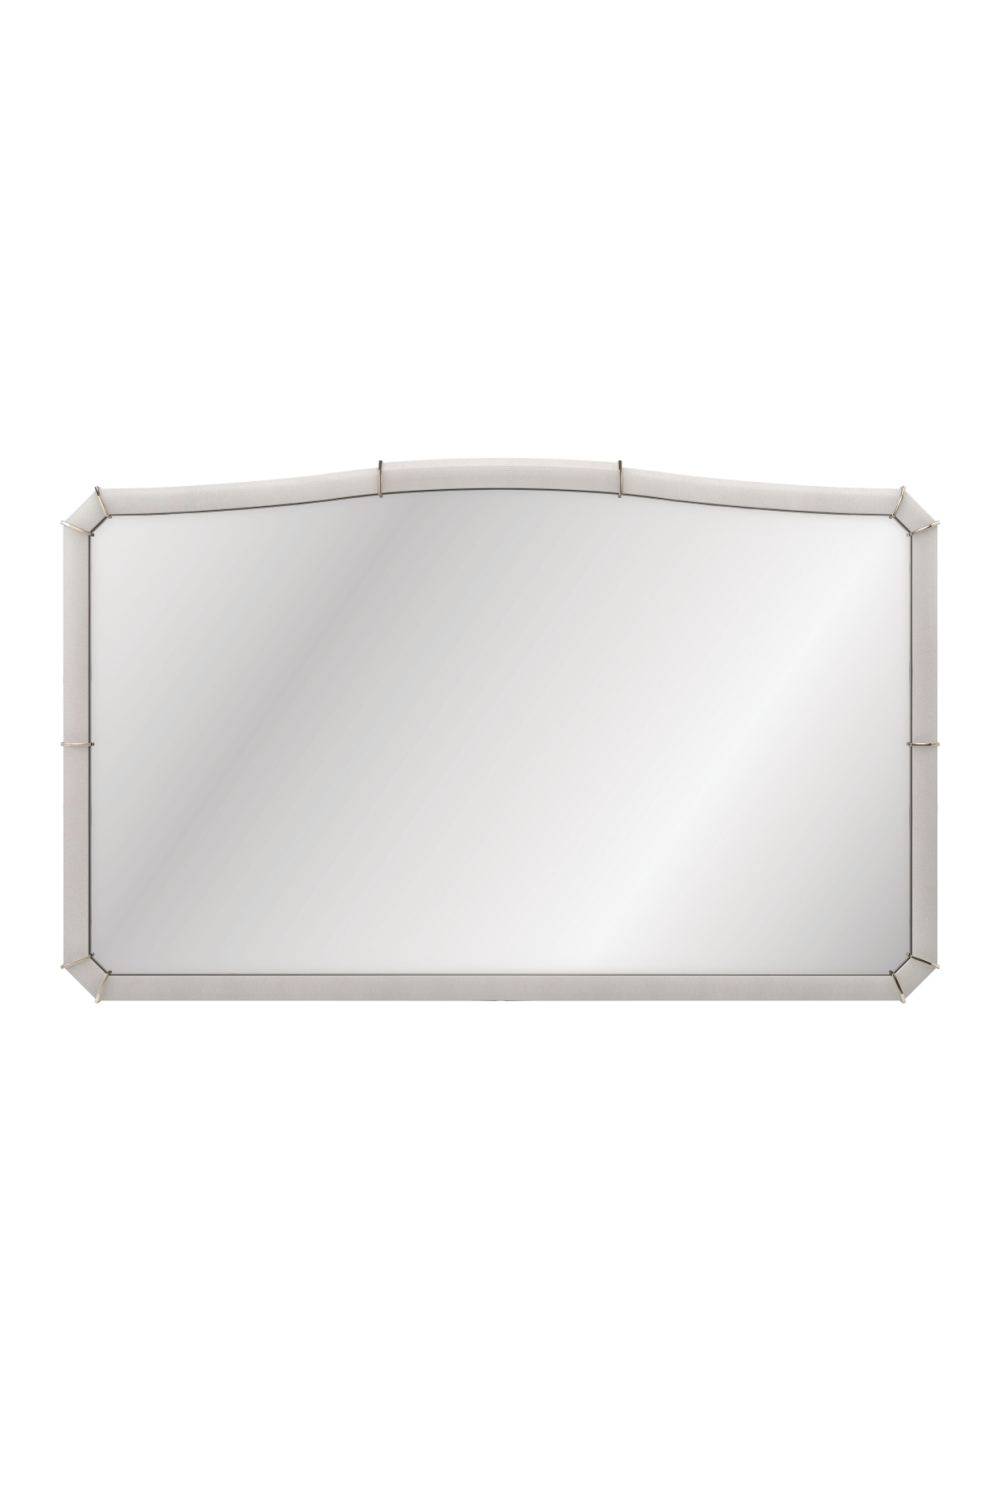 Shagreen Curved Mirror | Caracole Aria | Oroa.com